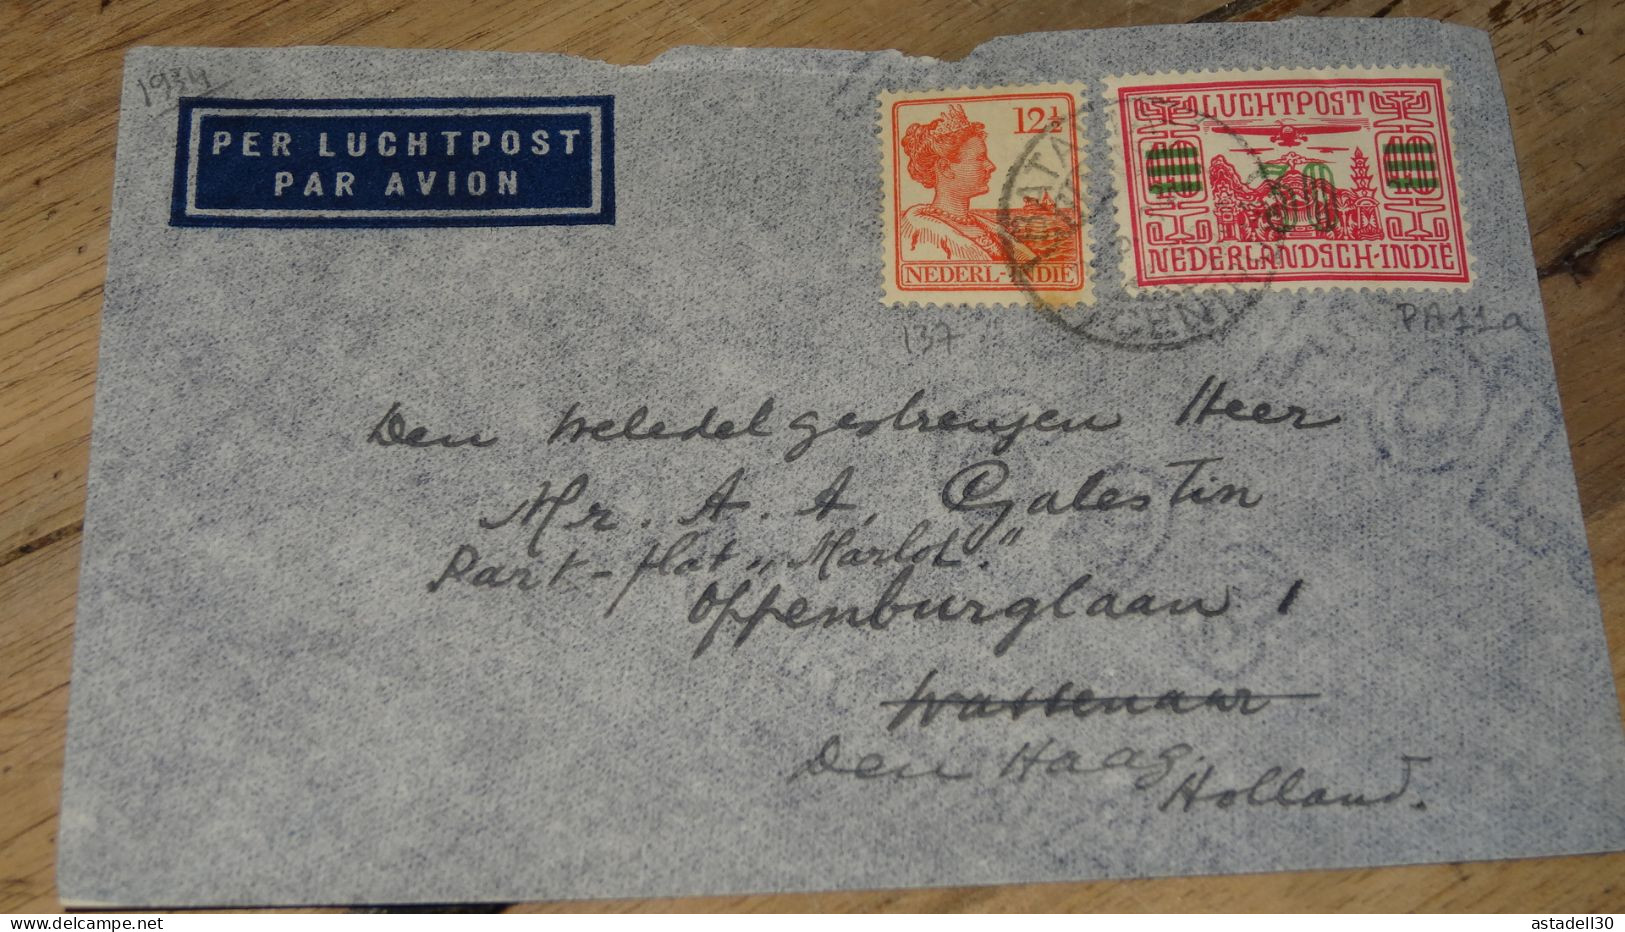 NEDERLANDISCH INDIE, Cover Luchtpost To Holland - 1934 ......... ..... 240424 ....... CL5-6 - Netherlands Indies